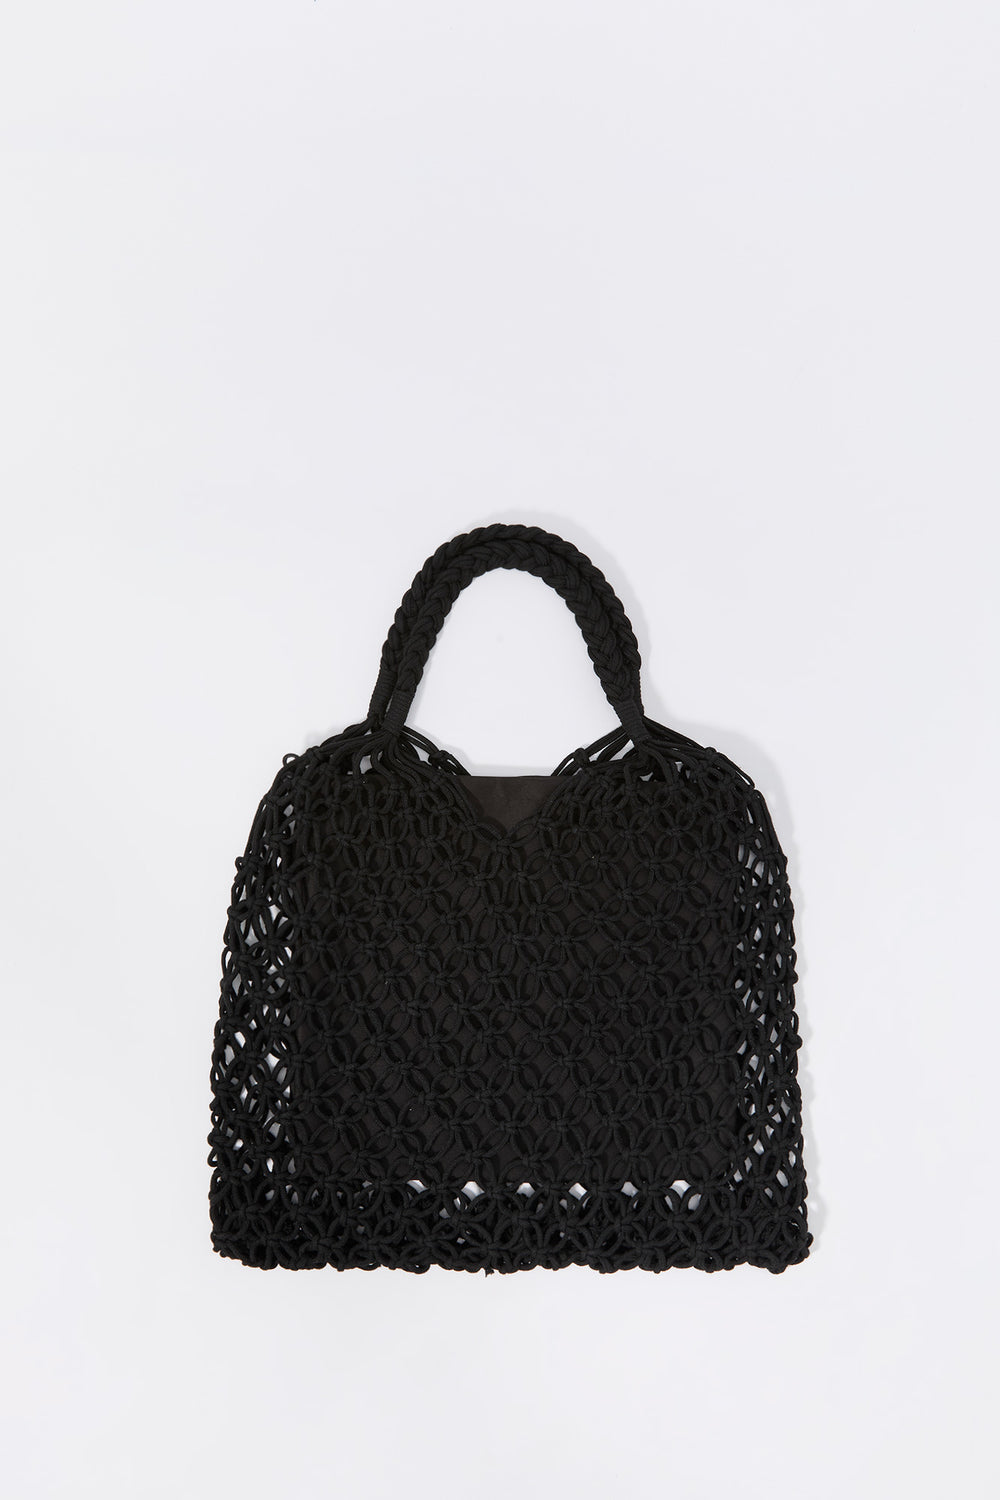 Crochet Handbag Crochet Handbag 4